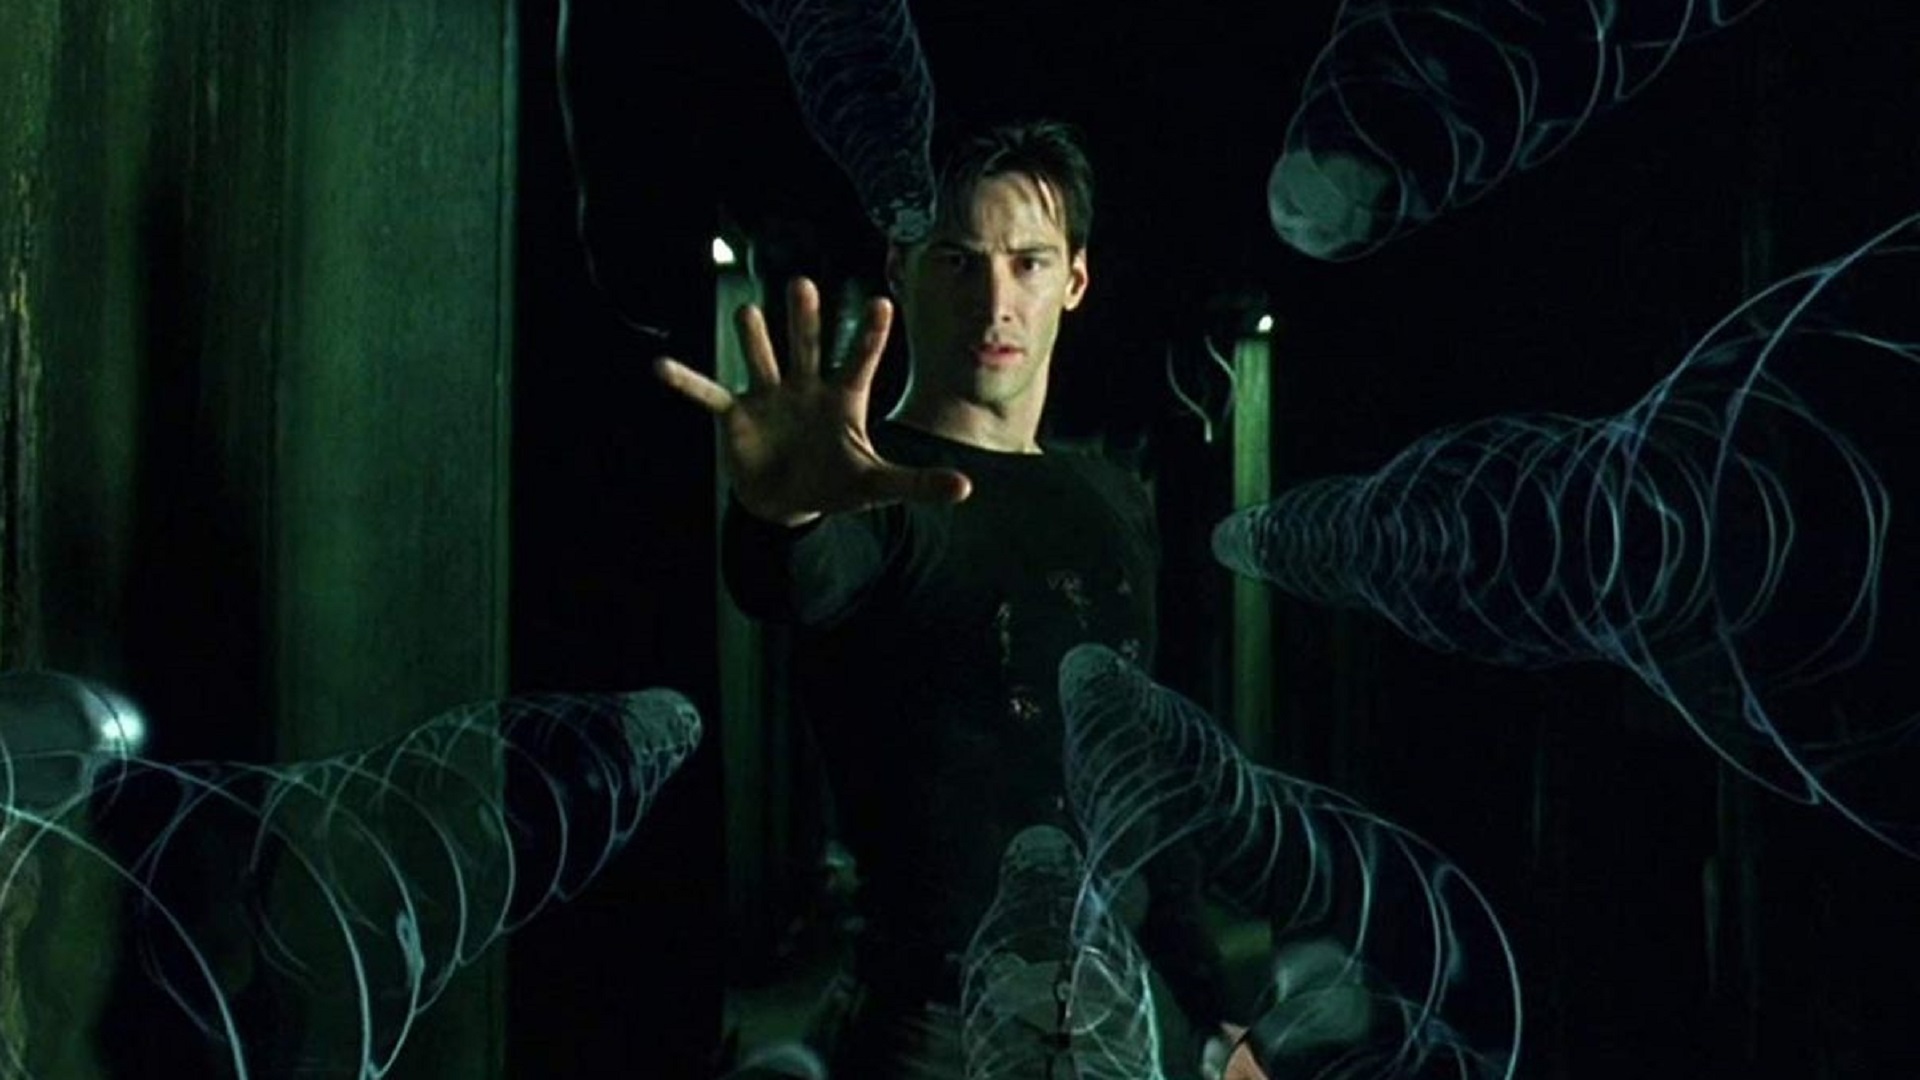 Lilly Wachowski confirma que Matrix siempre fue una alegoría trans